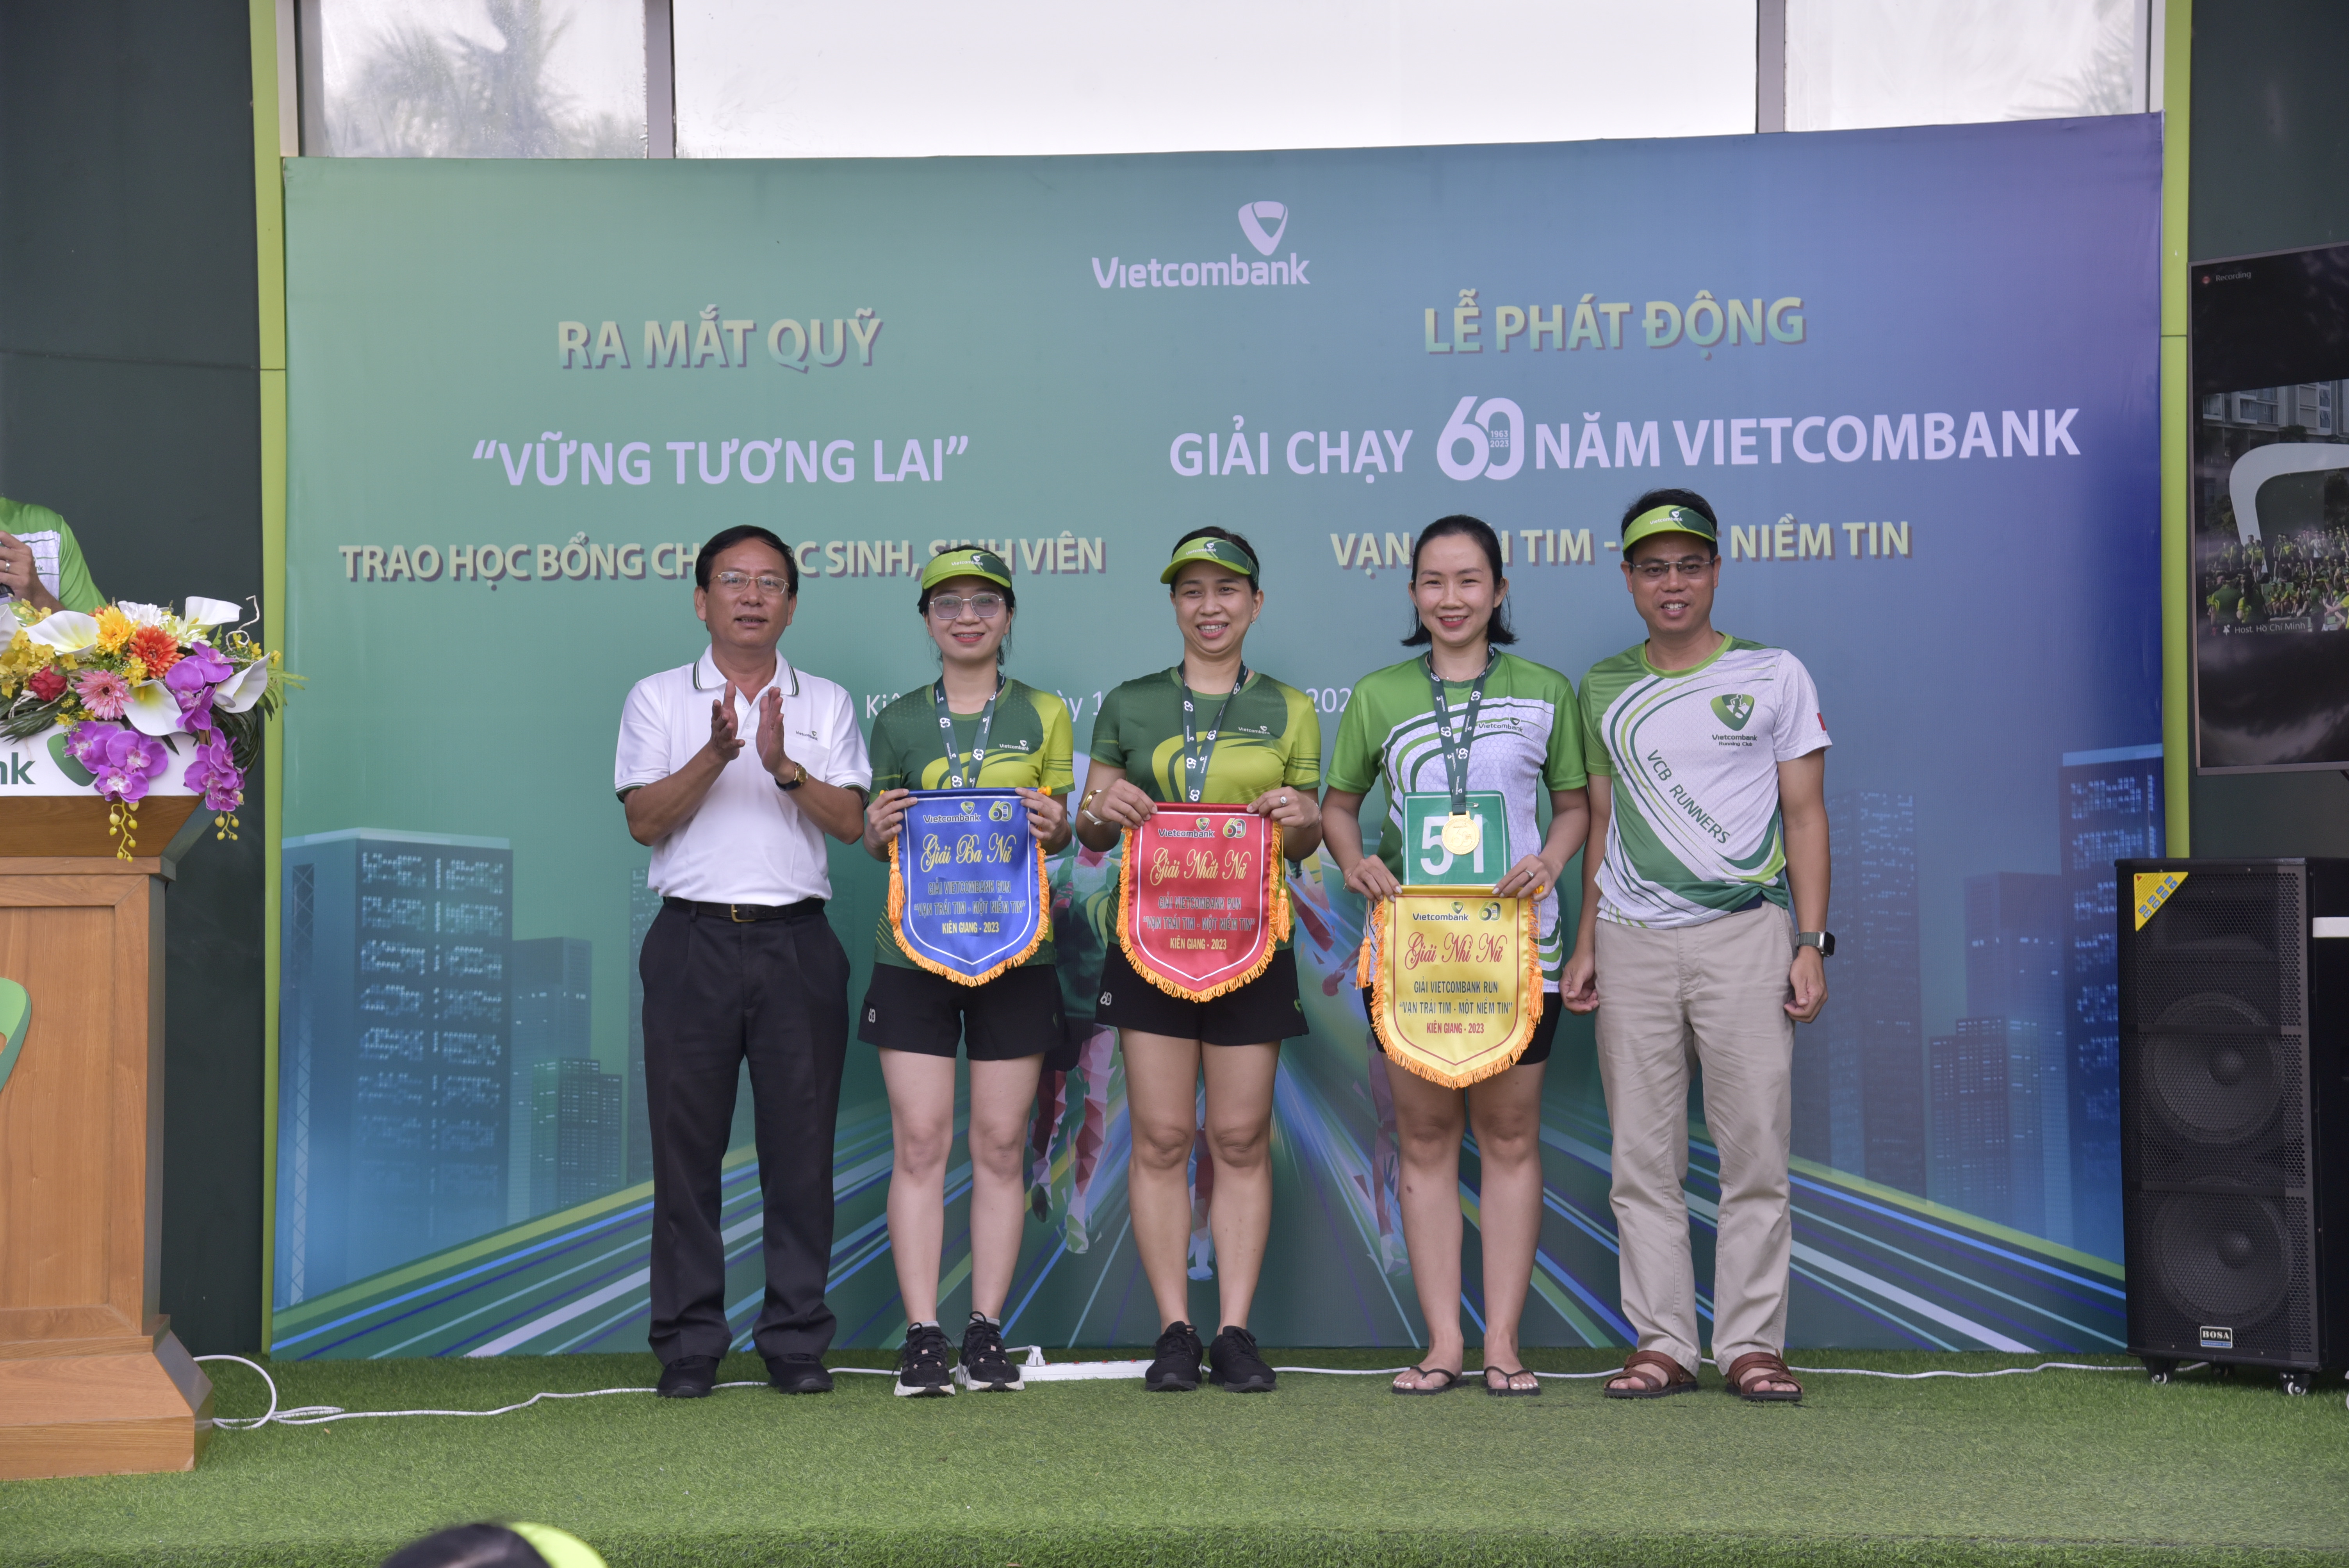  Vietcombank Kiên Giang tổ chức thành công giải chạy “60 năm Vietcombank: Vạn trái tim - Một niềm tin”